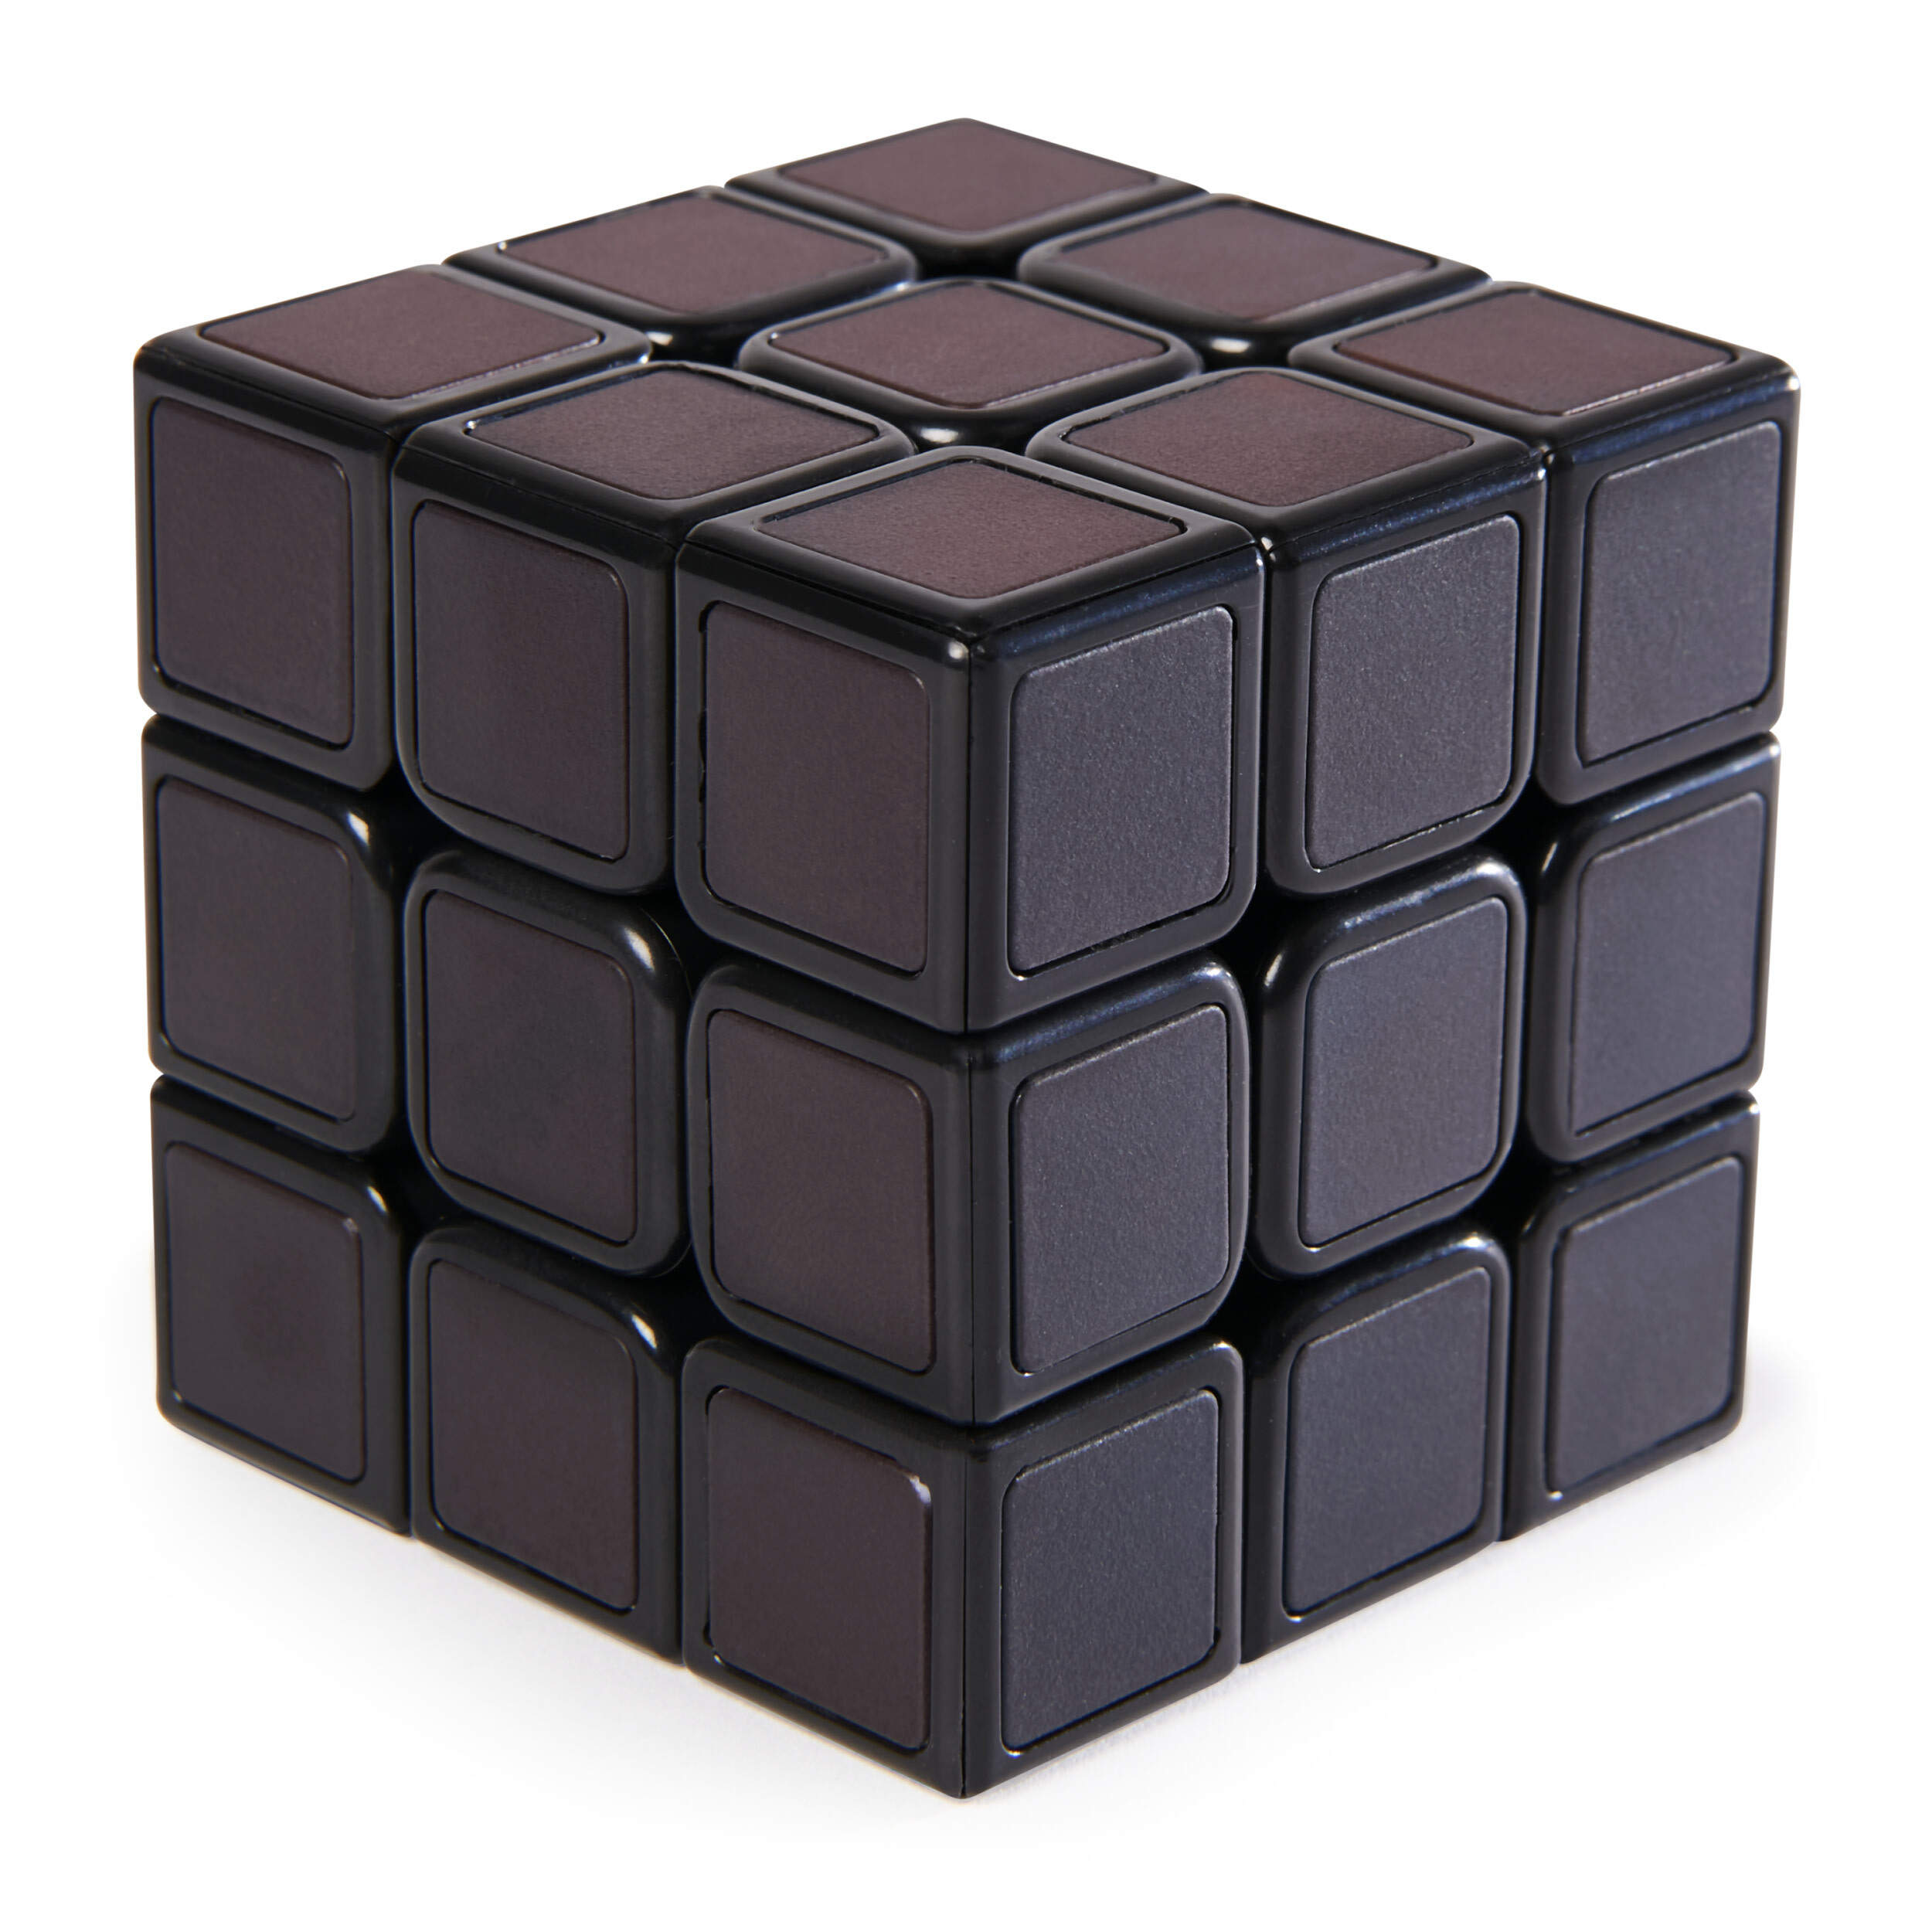 Rubik's Rubik’s Rubik's Cube Phantom - 3x3-kubus met geavanceerde technologie - moeilijke 3D-puzzel - reisspel - stressverlagend fidget-speeltje